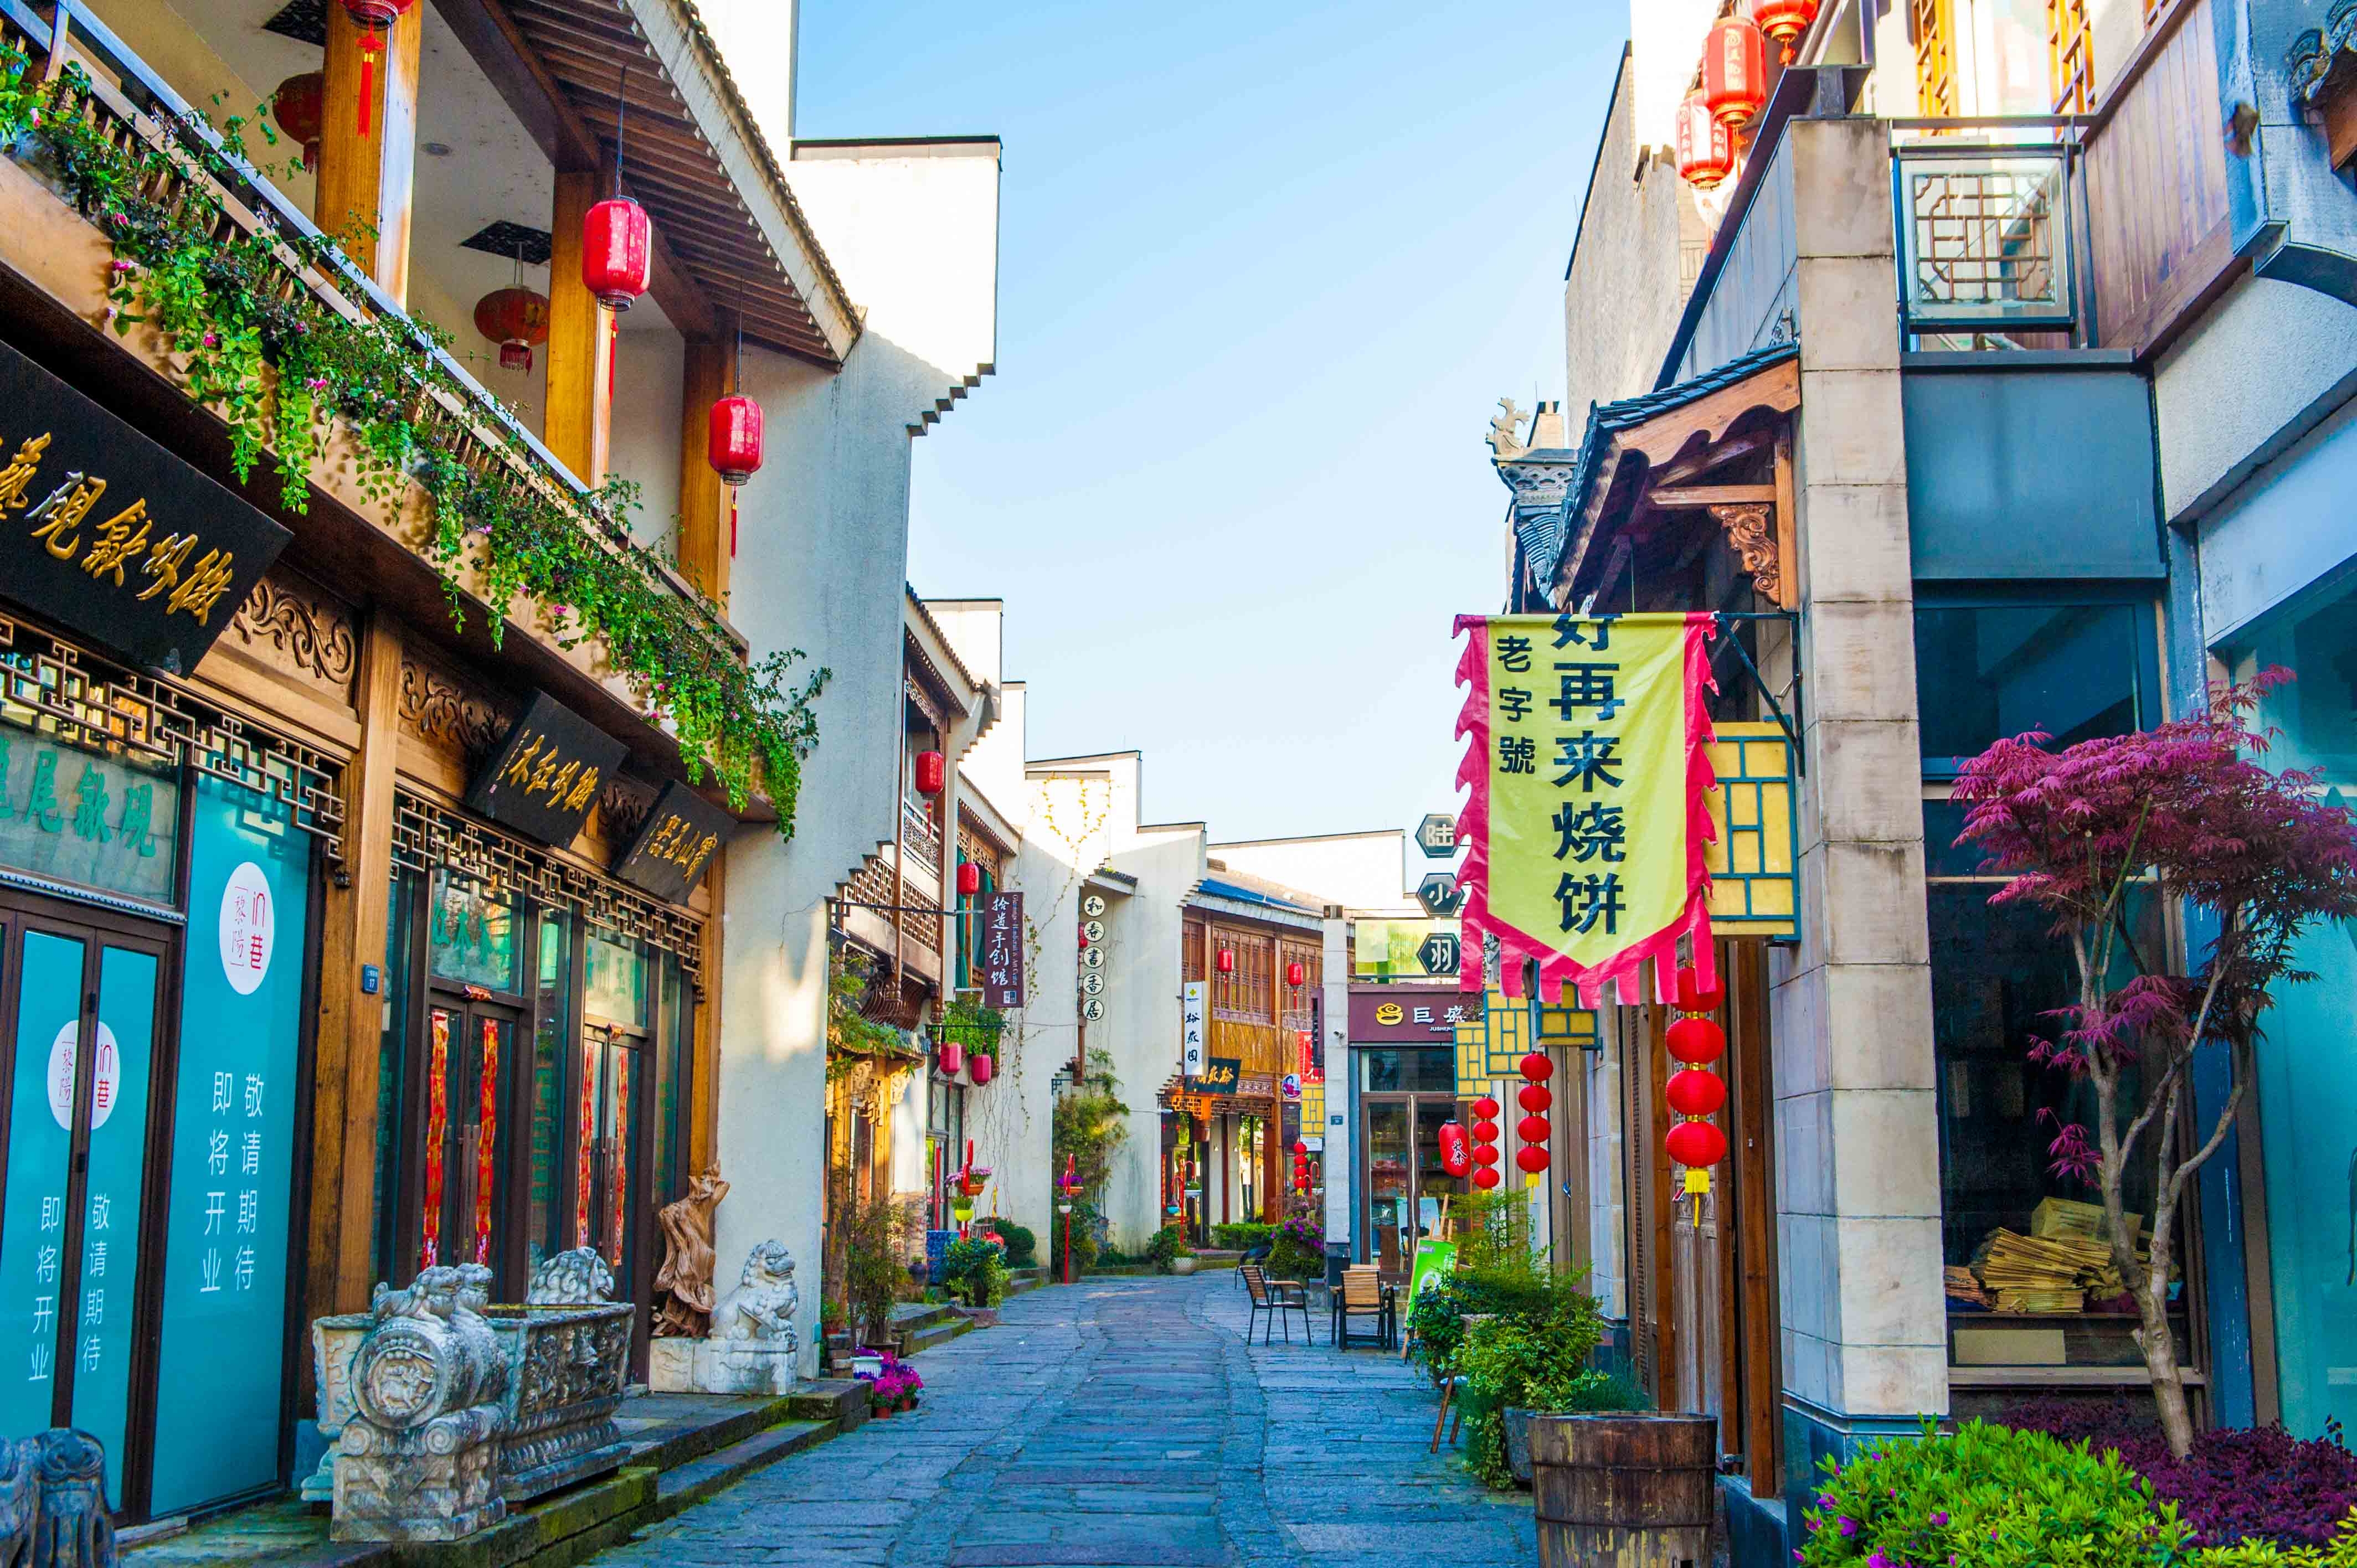 黄山最文艺的古镇,有1800多年历史,不收门票,风景堪比宏村